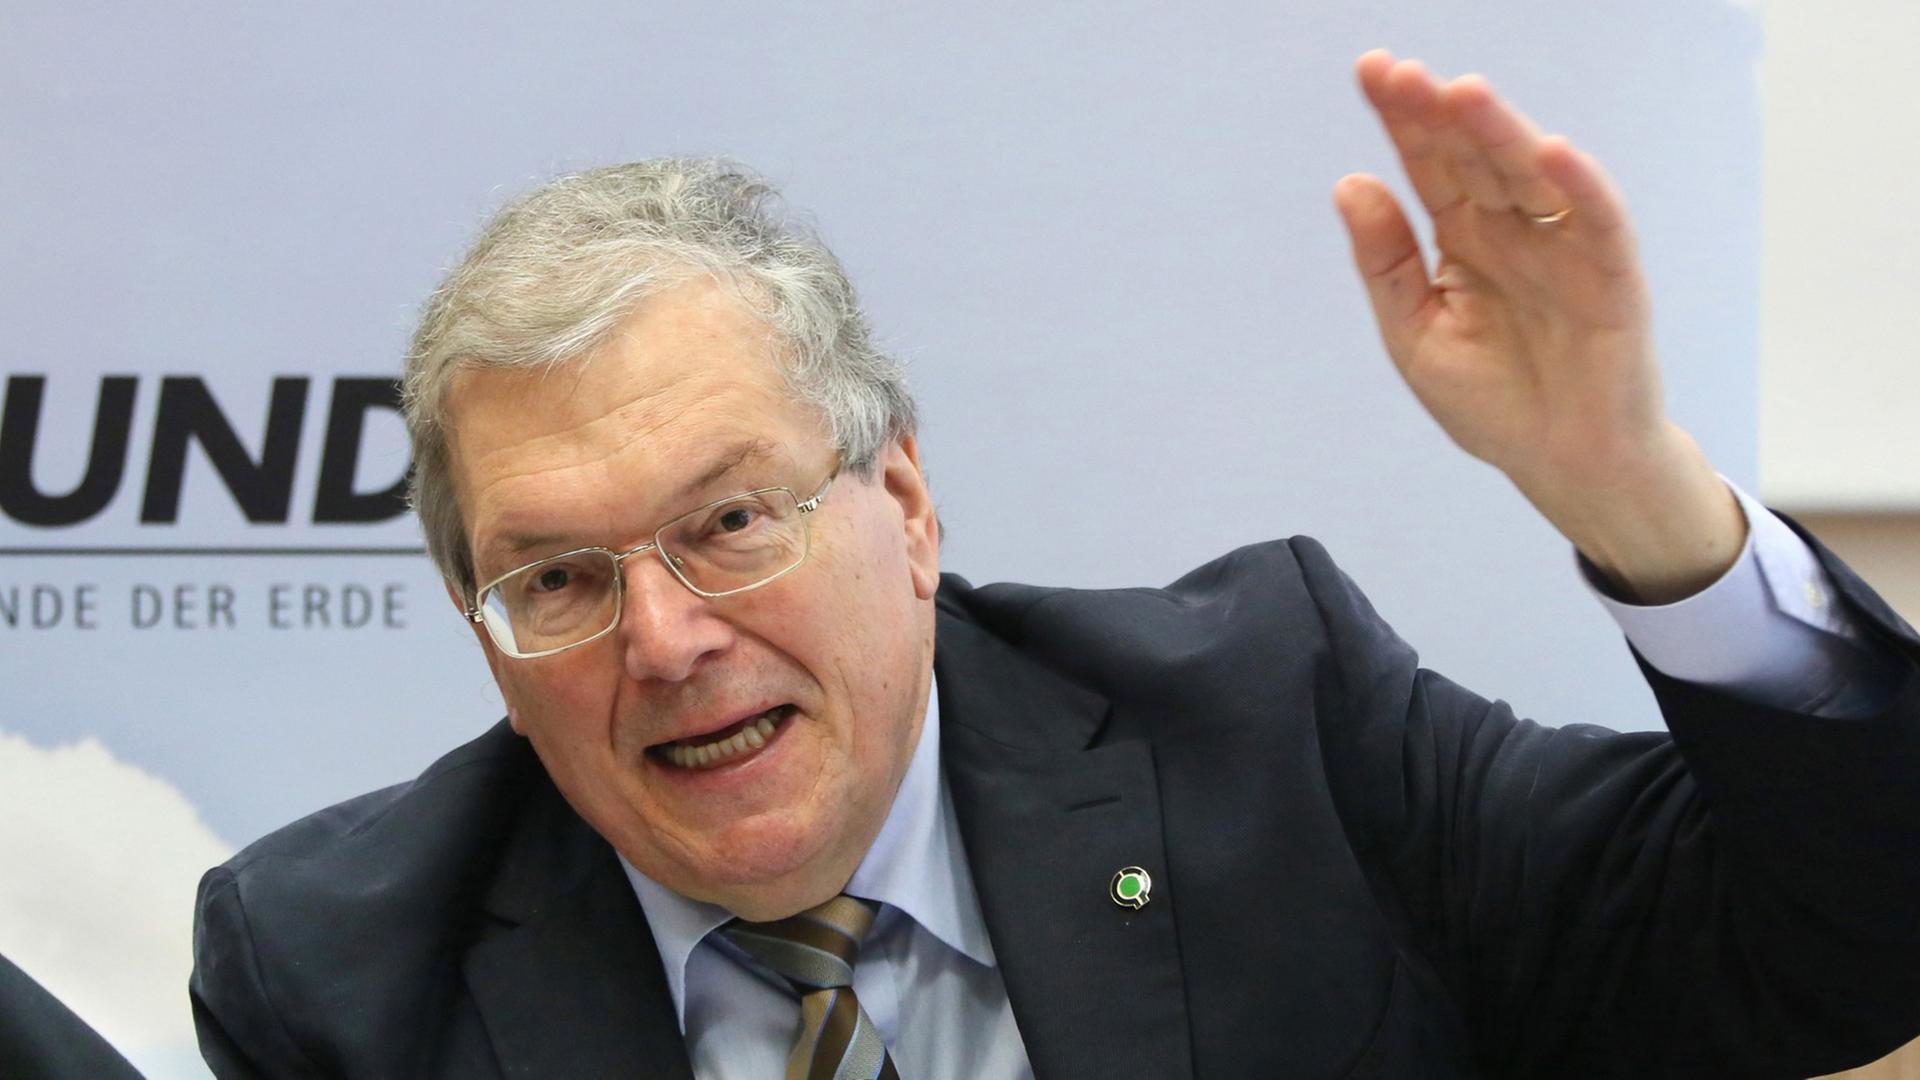 Der Vorsitzende der Organisation Bund für Umwelt und Naturschutz Deutschland, Hubert Weiger, bei einer Pressekonferenz in Berlin. Er hebt den linken Arm.